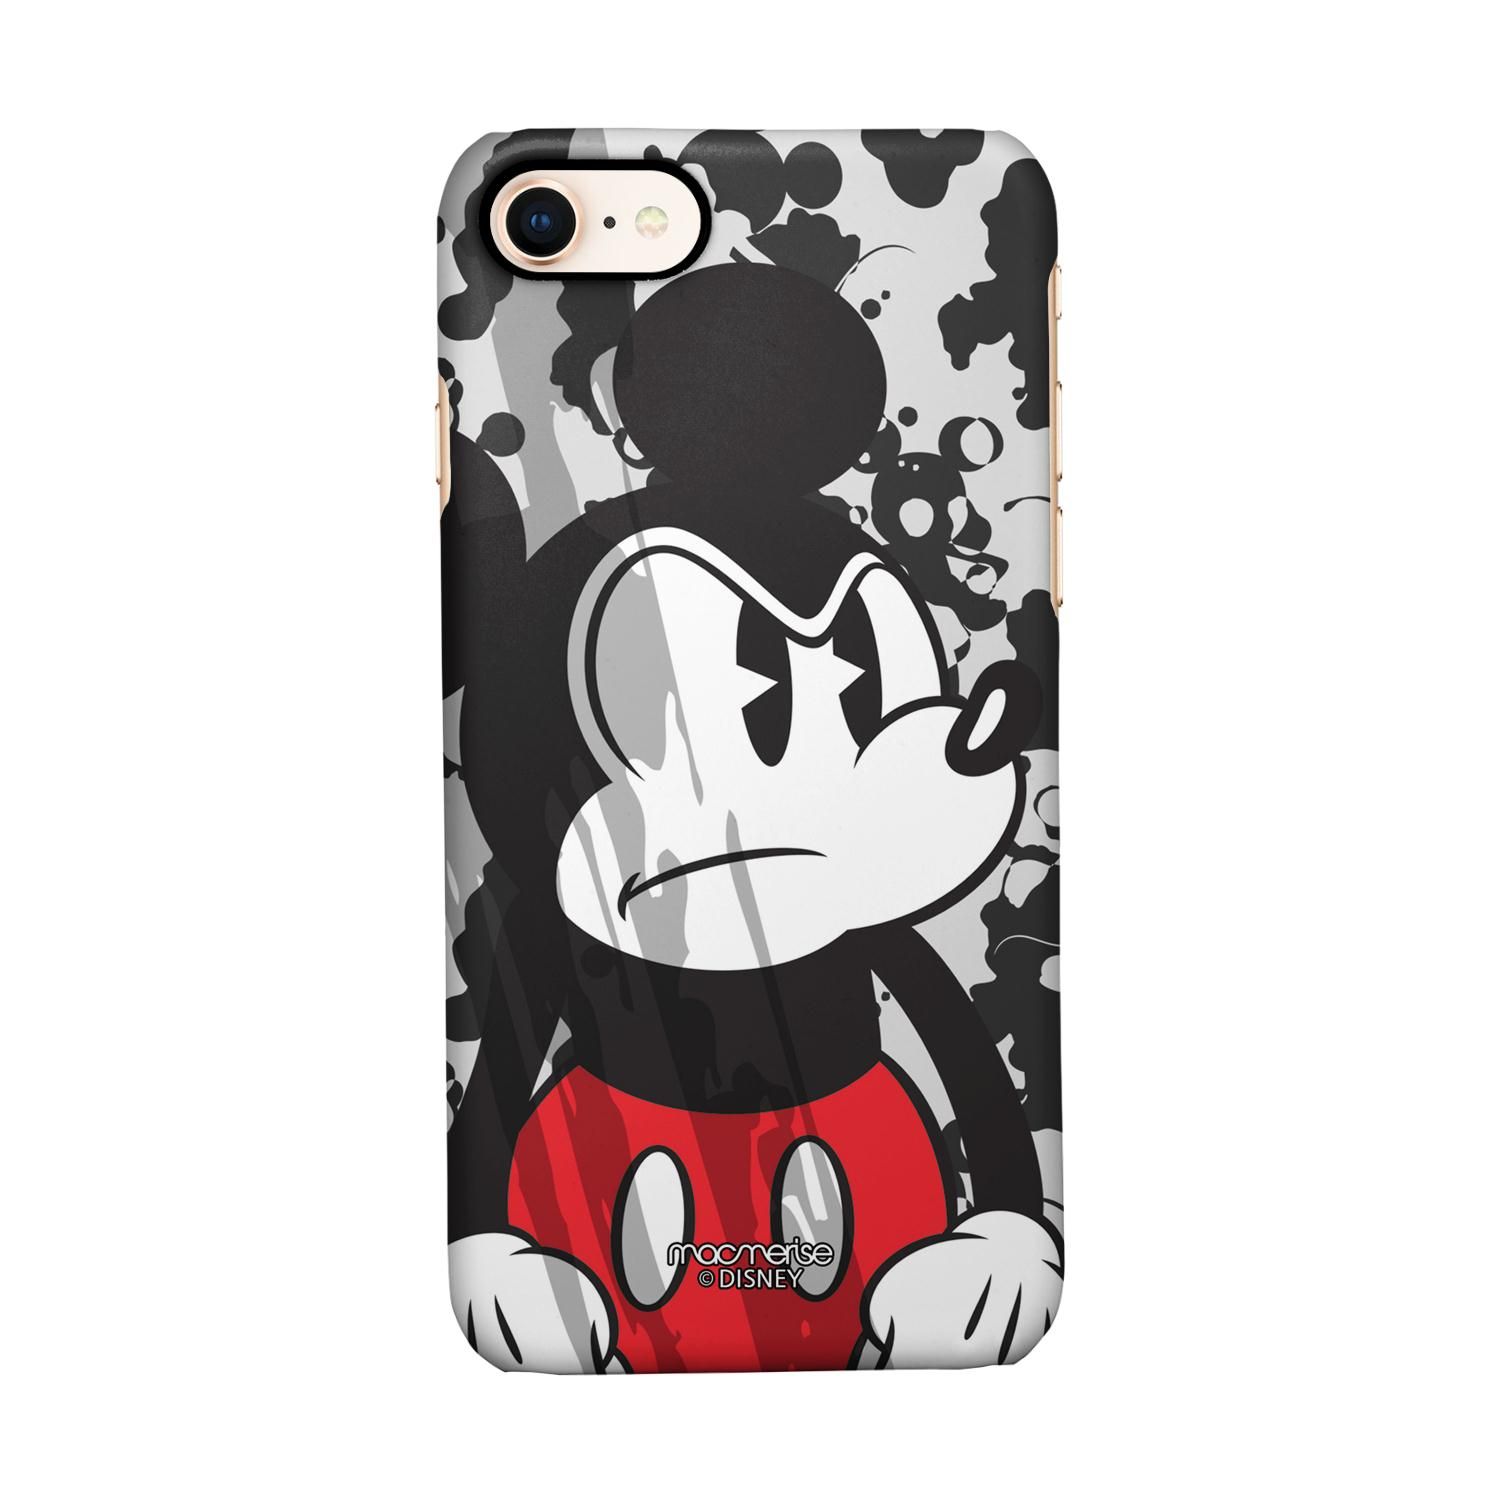 Buy Grumpy Mickey - Sleek Phone Case for iPhone 8 Online